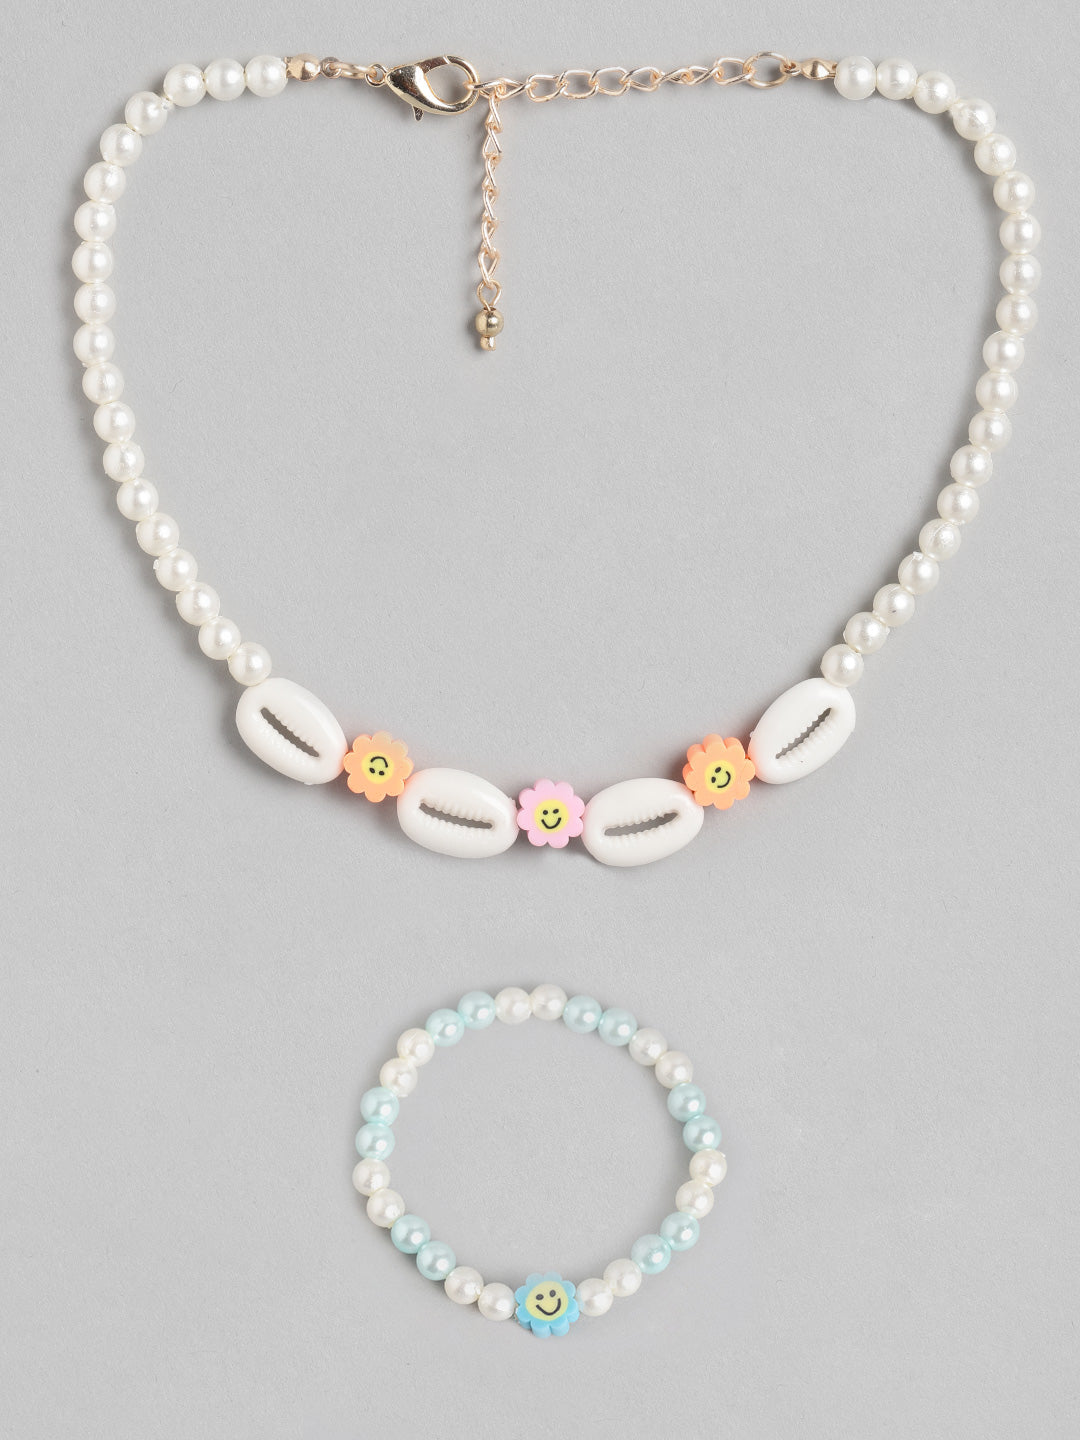 Seashell beaded necklace – Coastal Beads by Rebecca